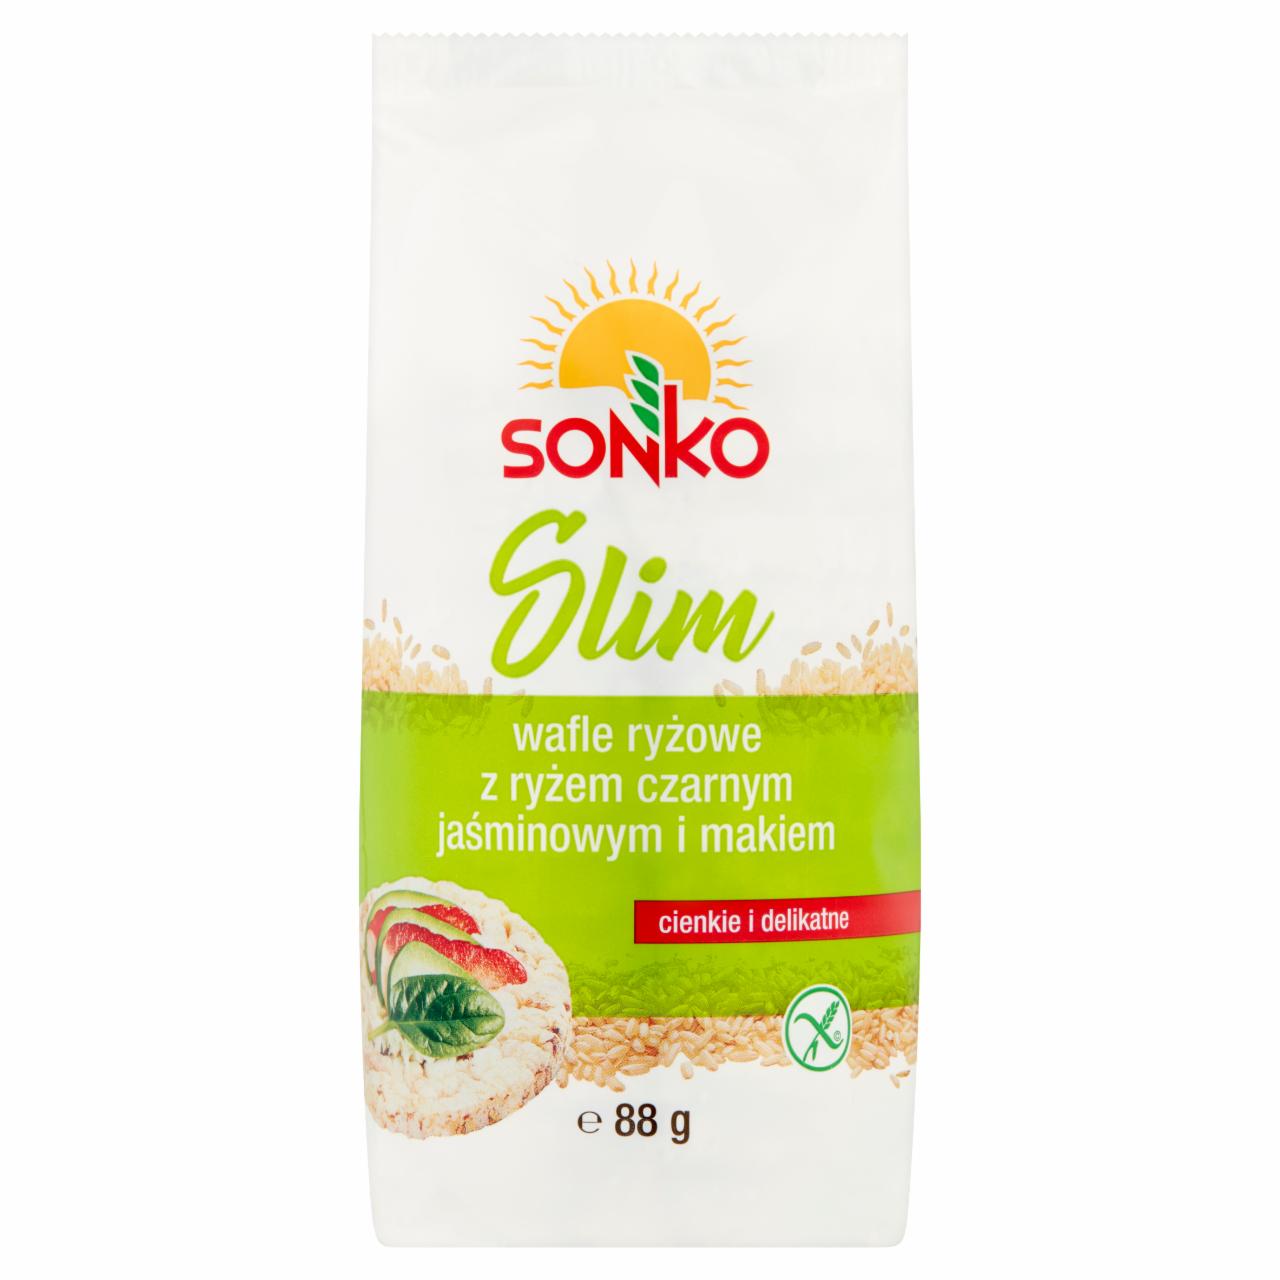 Zdjęcia - Sonko Slim Wafle ryżowe z ryżem czarnym jaśminowym i makiem 88 g